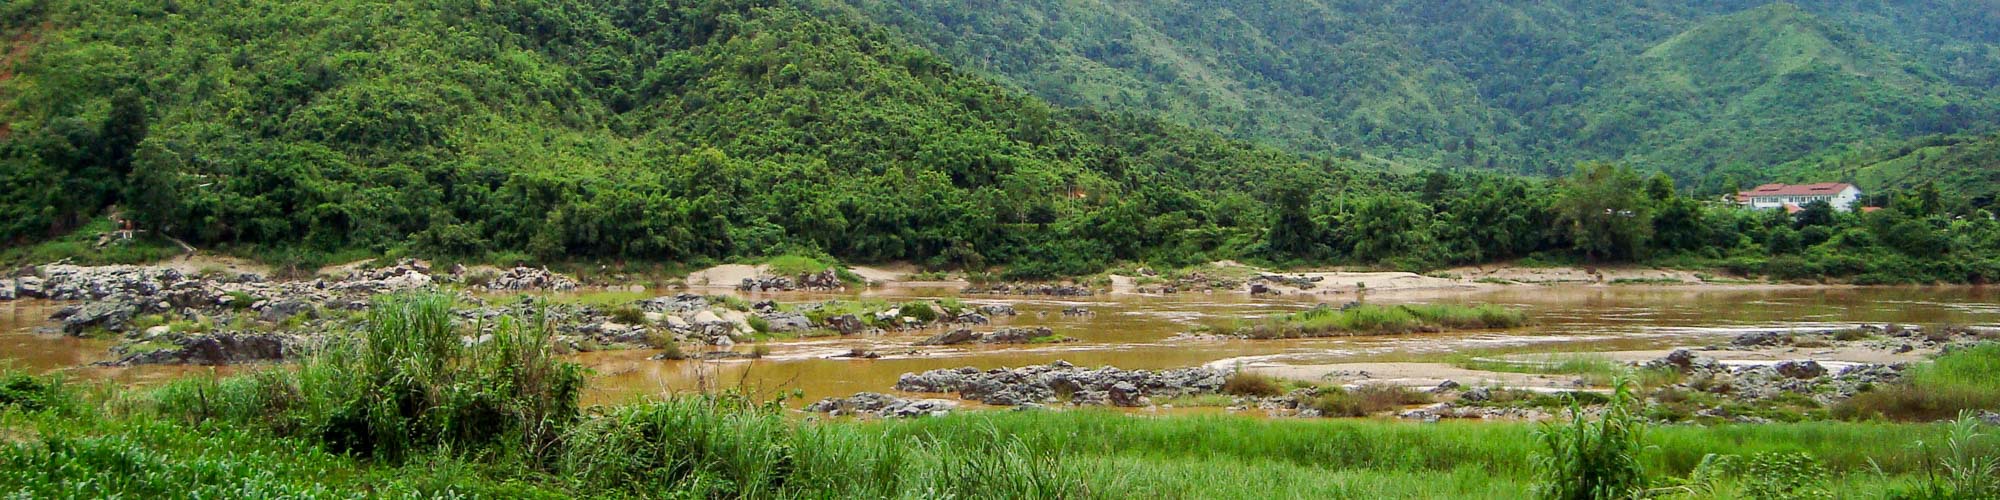 เชียงของ, เชียงราย, ประเทศไทย: ในพื้นที่ที่ดินได้ปลูกไม้สักอายุประมาณ 30 ปี ด้านหลังที่ดินติดแม่น้ำโขง